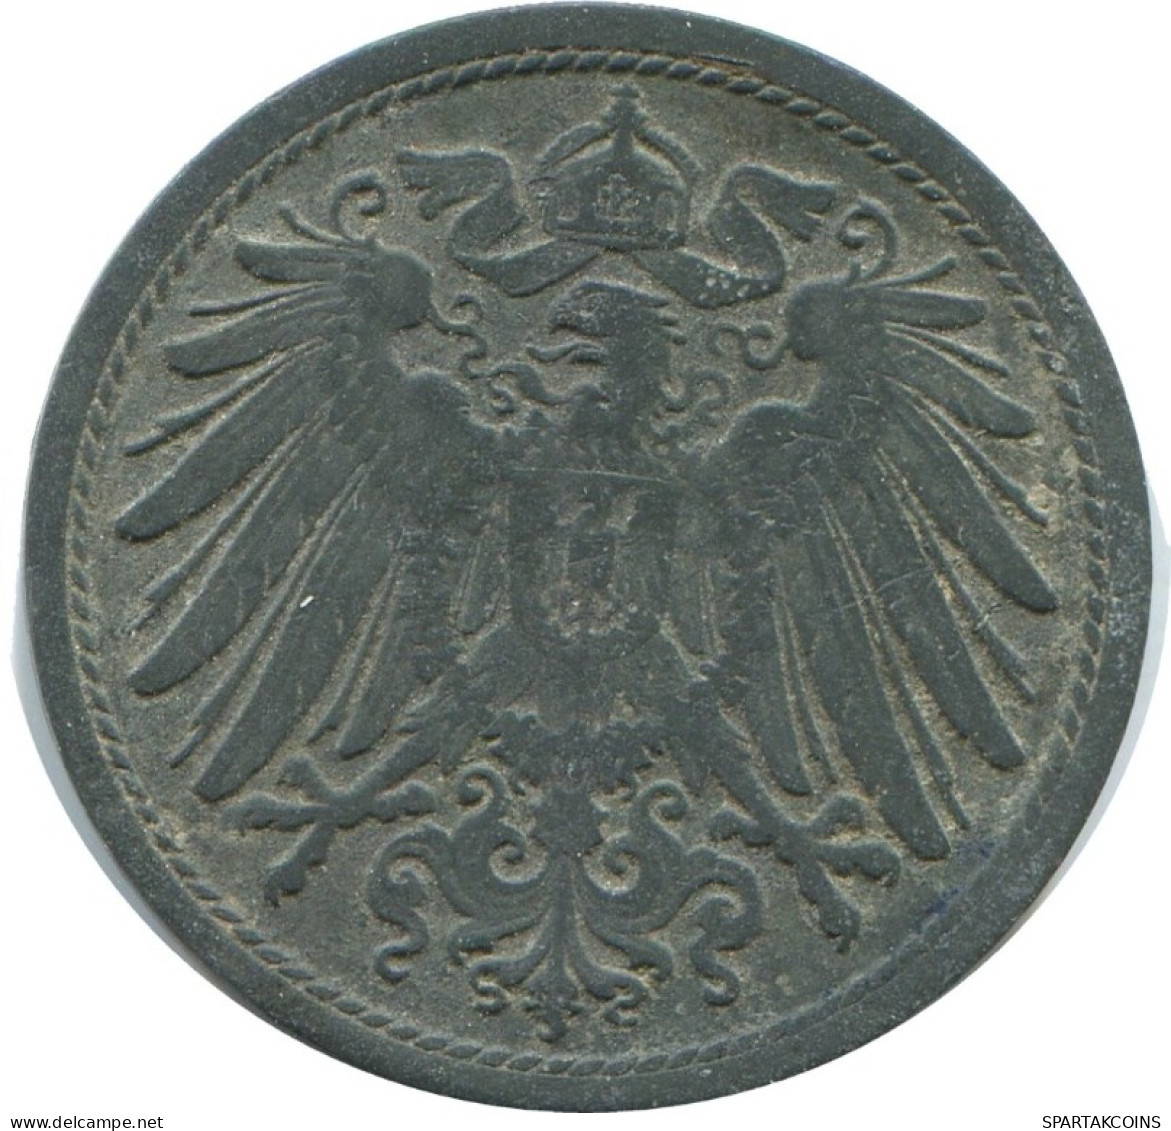 10 PFENNIG 1917 GERMANY Coin #AD526.9.U.A - 10 Pfennig